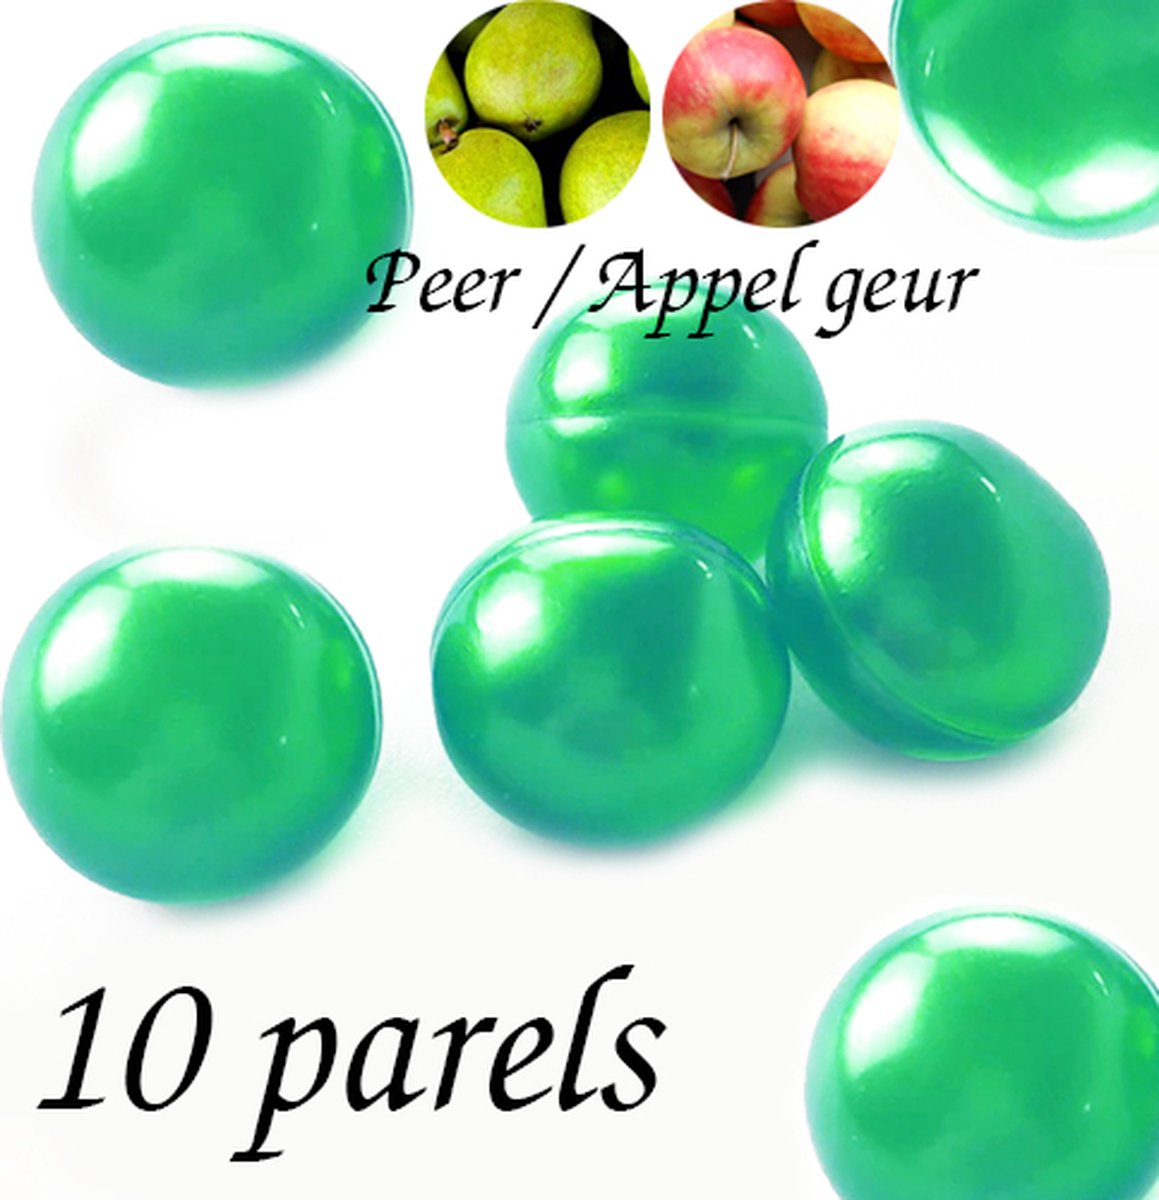 Badparels - 10 parels -Ronde badparels - Badparels voor in bad - badzout - Appel geur Groen - bruisballen voor bad - Heerlijke badparels met Sinas geur